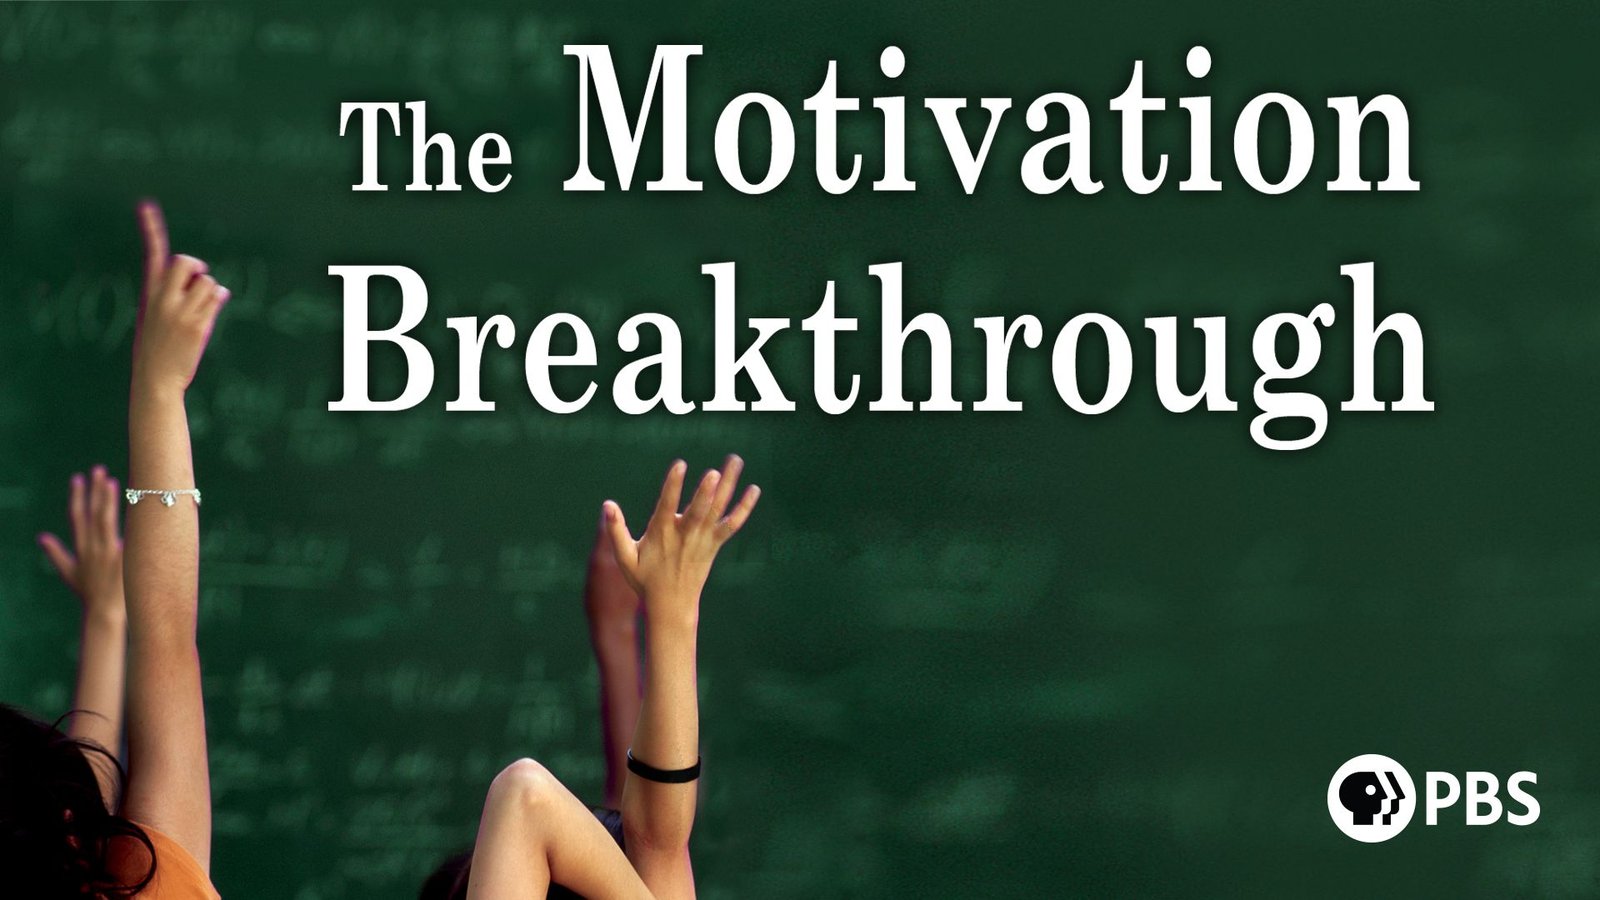 Richard Lavoie - The Motivation Breakthrough